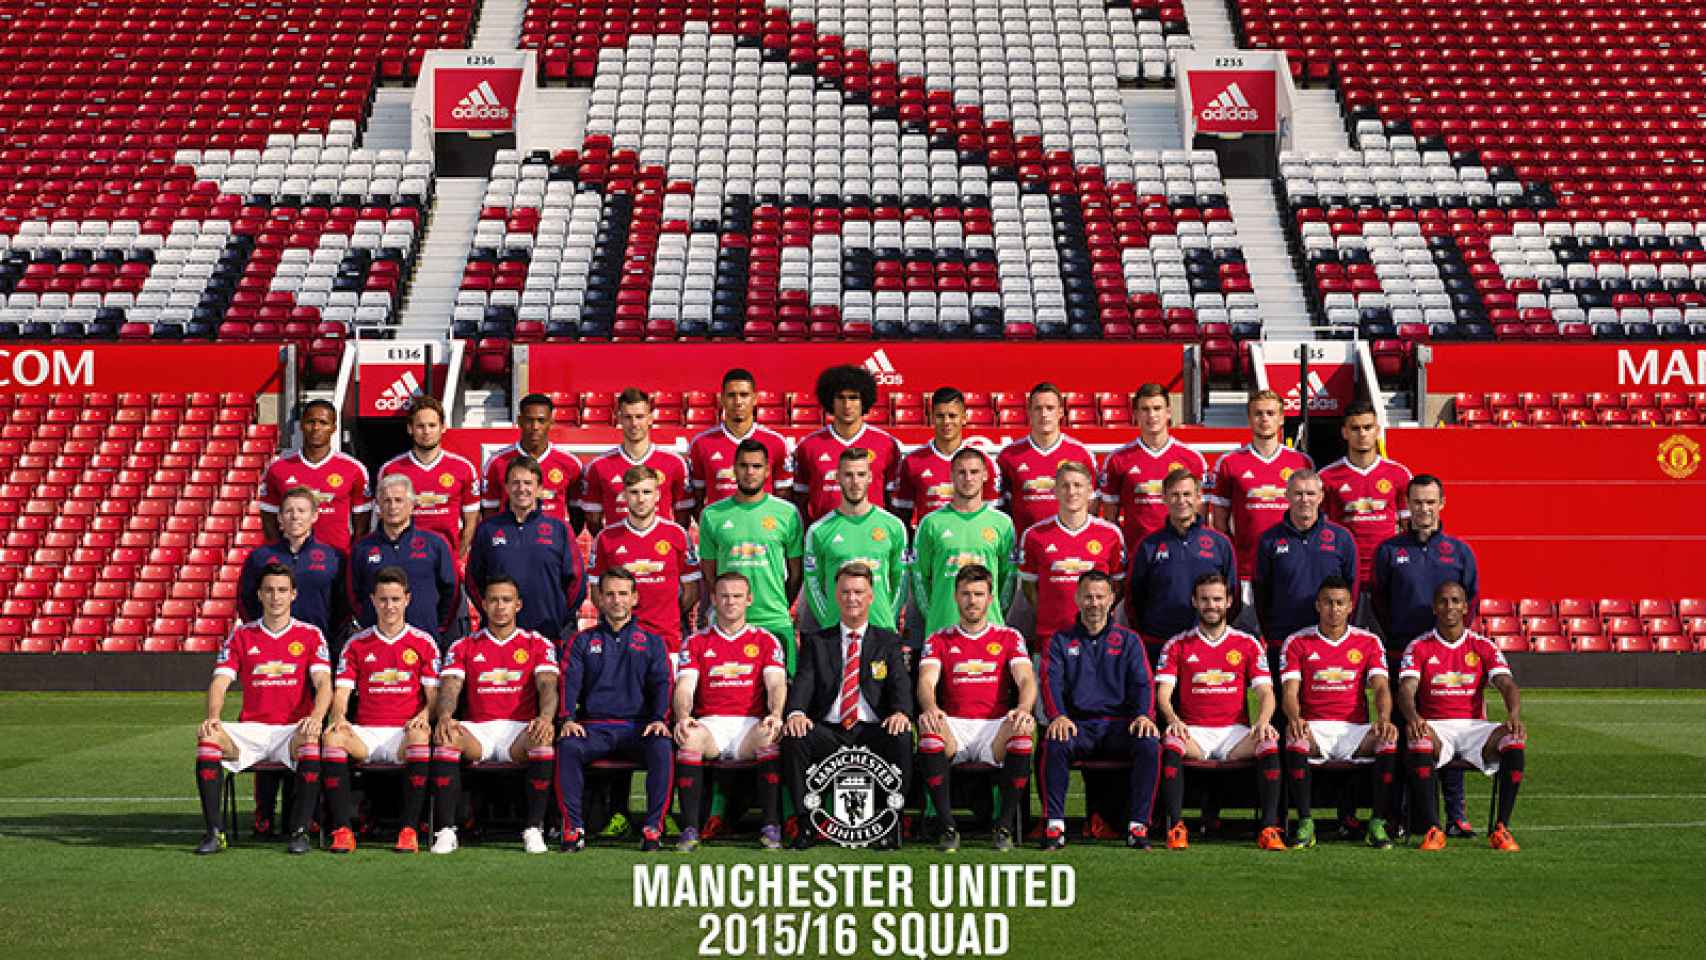 La plantilla del Manchester United, el equipo más poderoso y de más valor del índice bursátil del fútbol europeo.